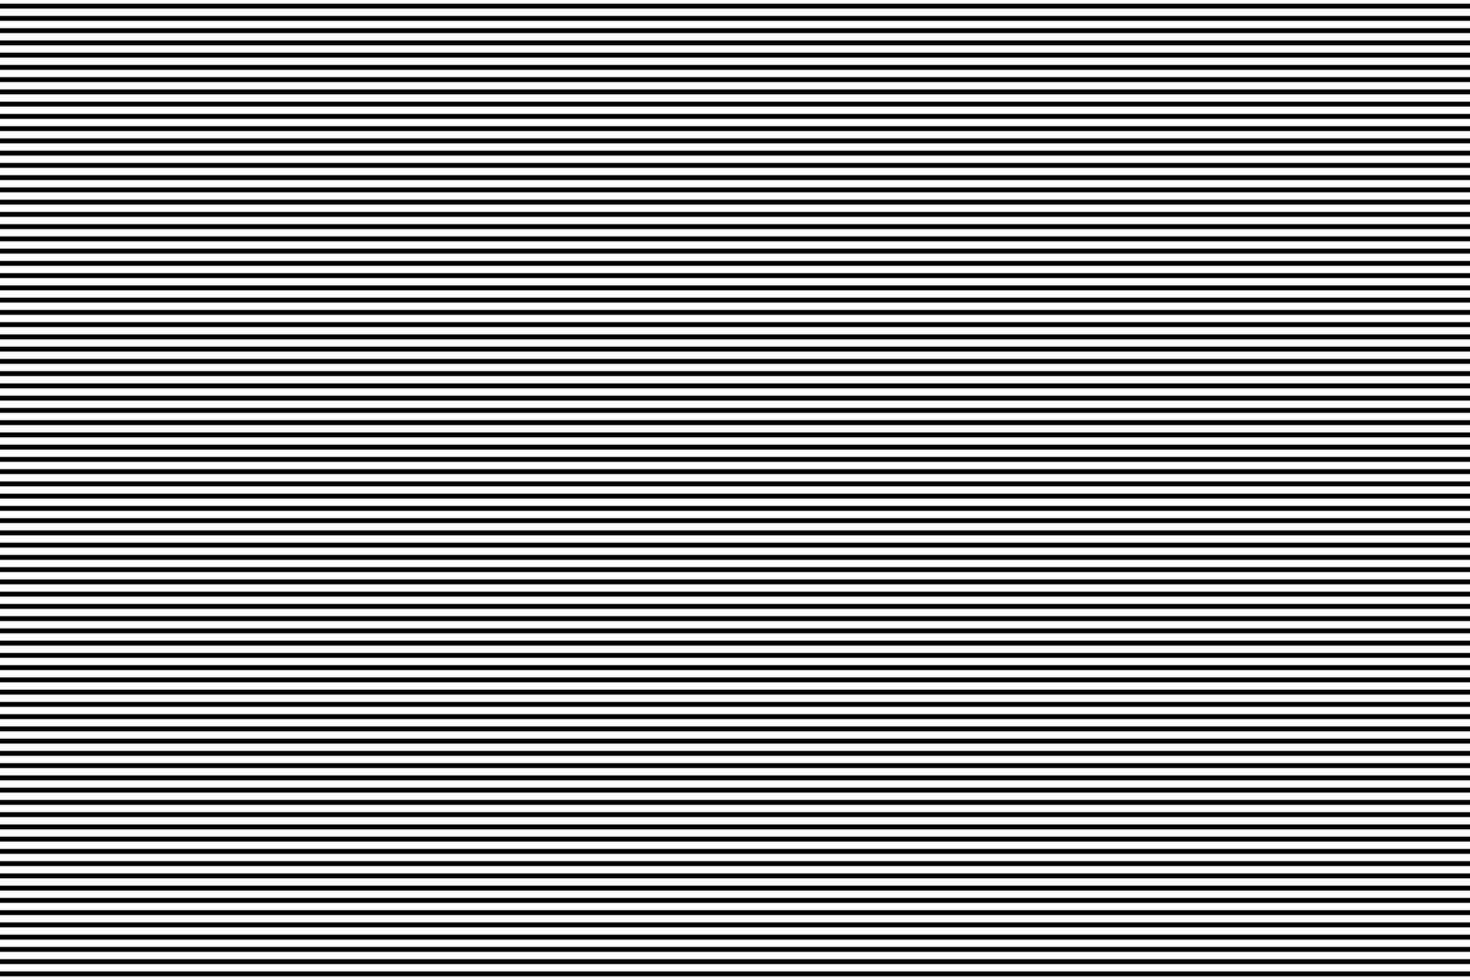 abstrakt nahtlos schwarz wiederholen Gerade Streifen horizontal Linie Muster. vektor